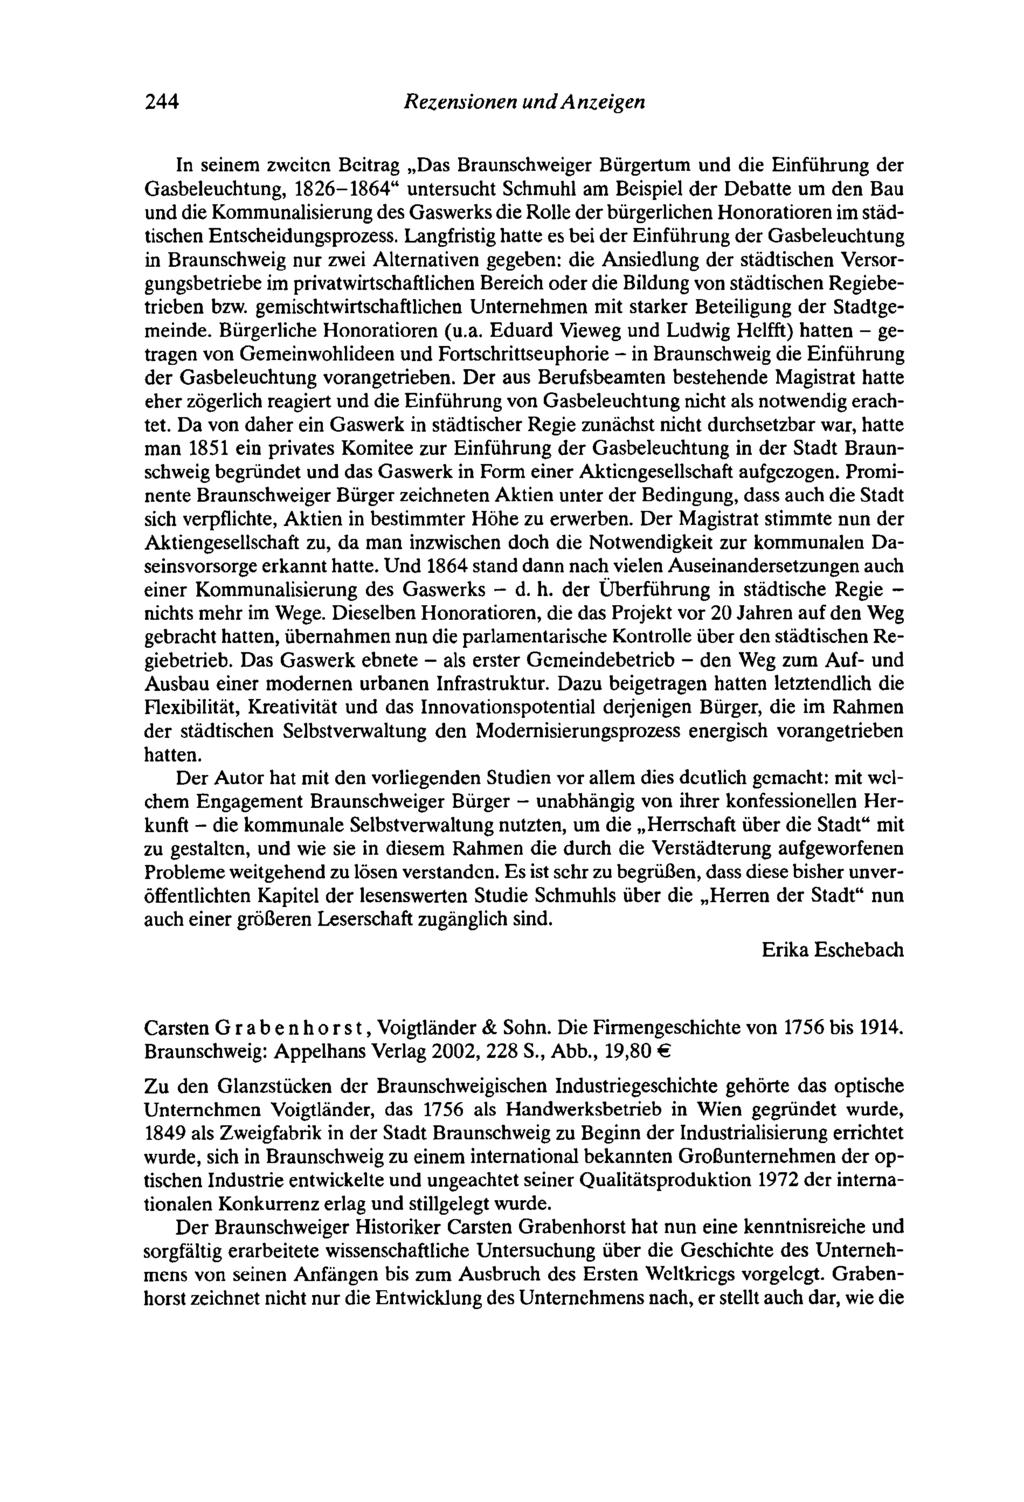 244 Rezensionen undanzeigen In seinem zweiten Beitrag "Das Braunschweiger Bürgertum und die Einführung der Gasbeleuchtung, 1826-1864" untersucht Schmuhl am Beispiel der Debatte um den Bau und die